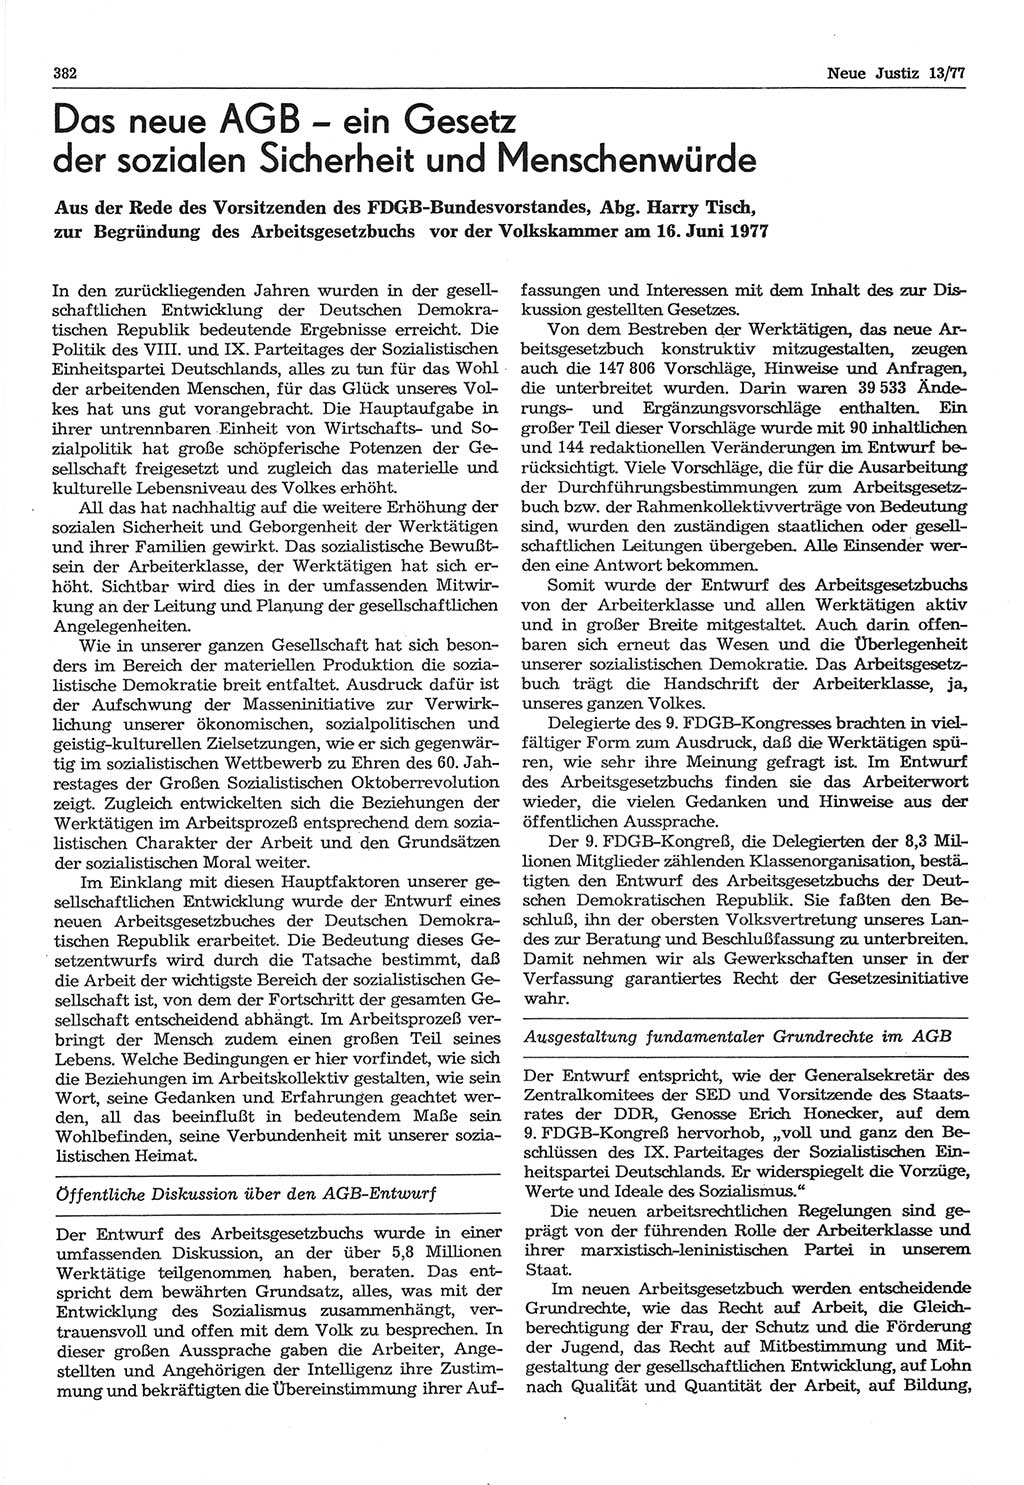 Neue Justiz (NJ), Zeitschrift für Recht und Rechtswissenschaft-Zeitschrift, sozialistisches Recht und Gesetzlichkeit, 31. Jahrgang 1977, Seite 382 (NJ DDR 1977, S. 382)